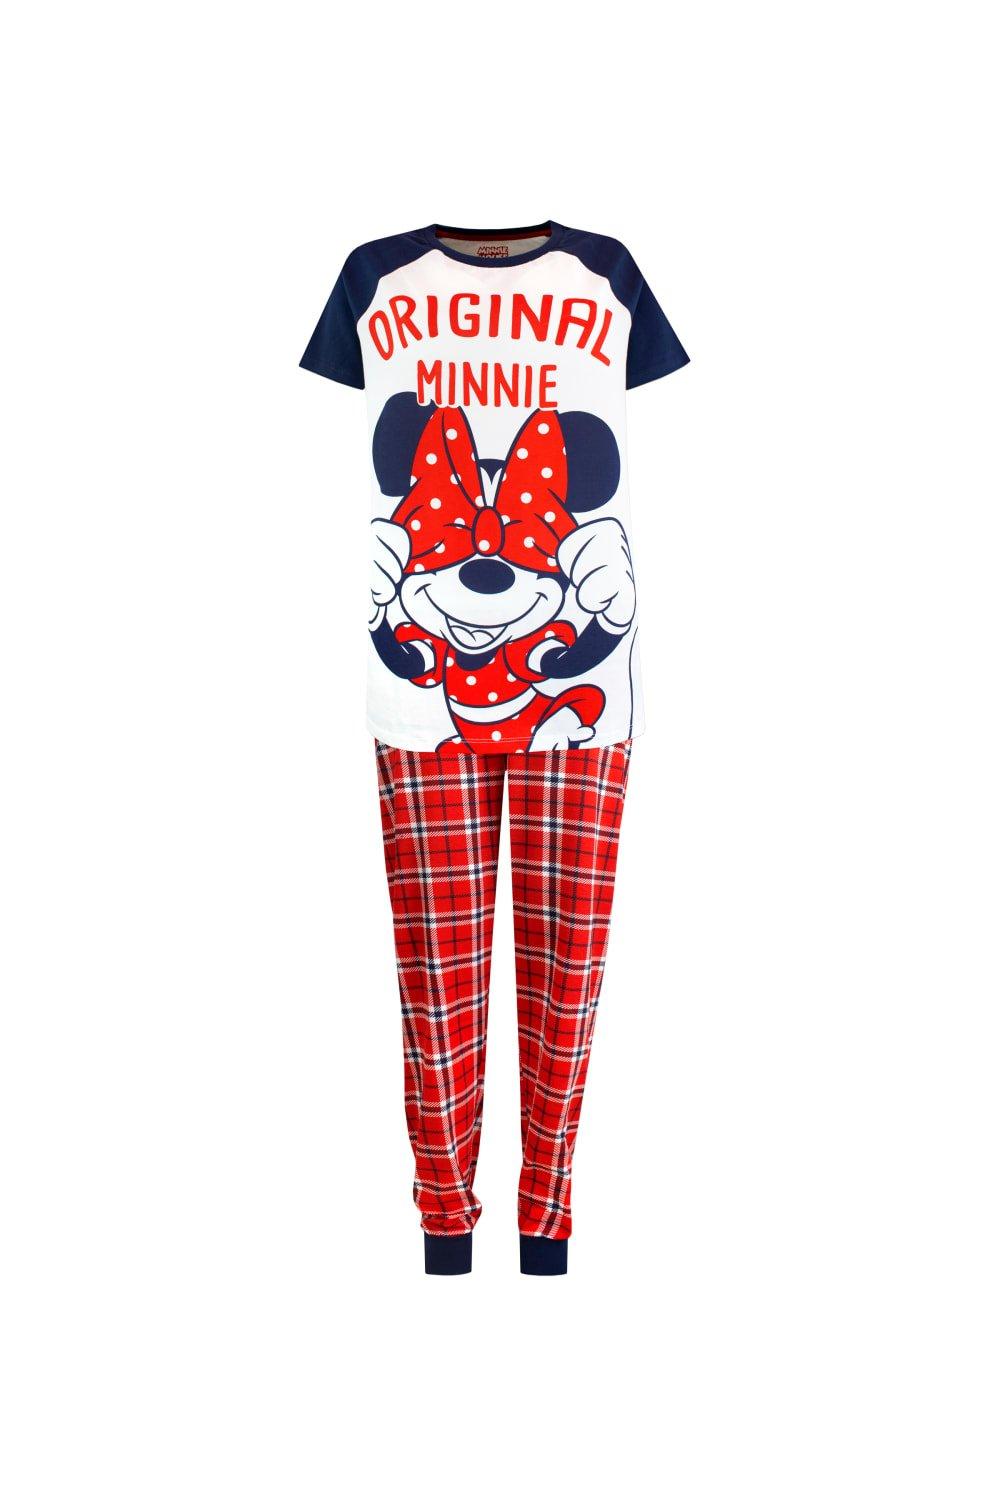 Minnie Mouse Pyjamas